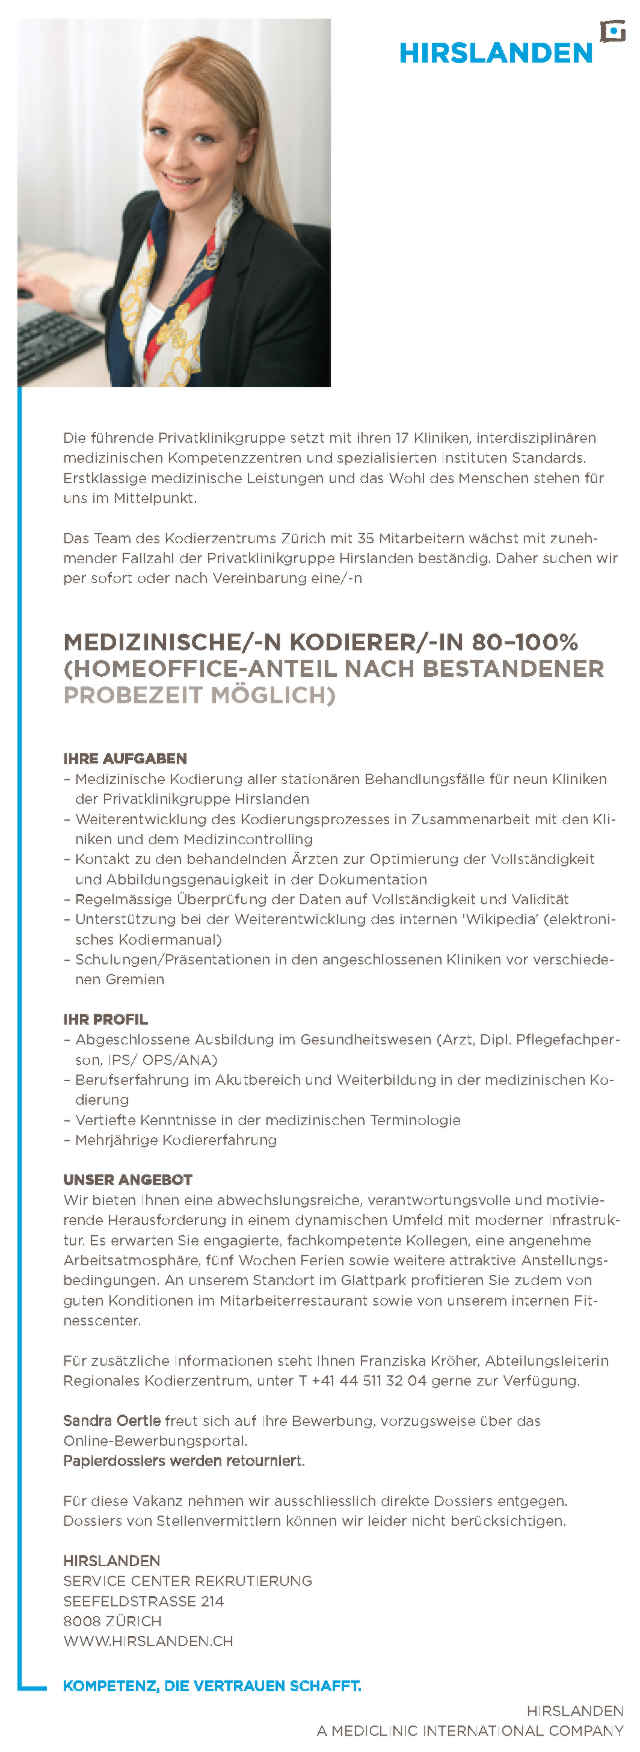 Hirslanden, Zürich: Medizinischer Kodierer (m/w)